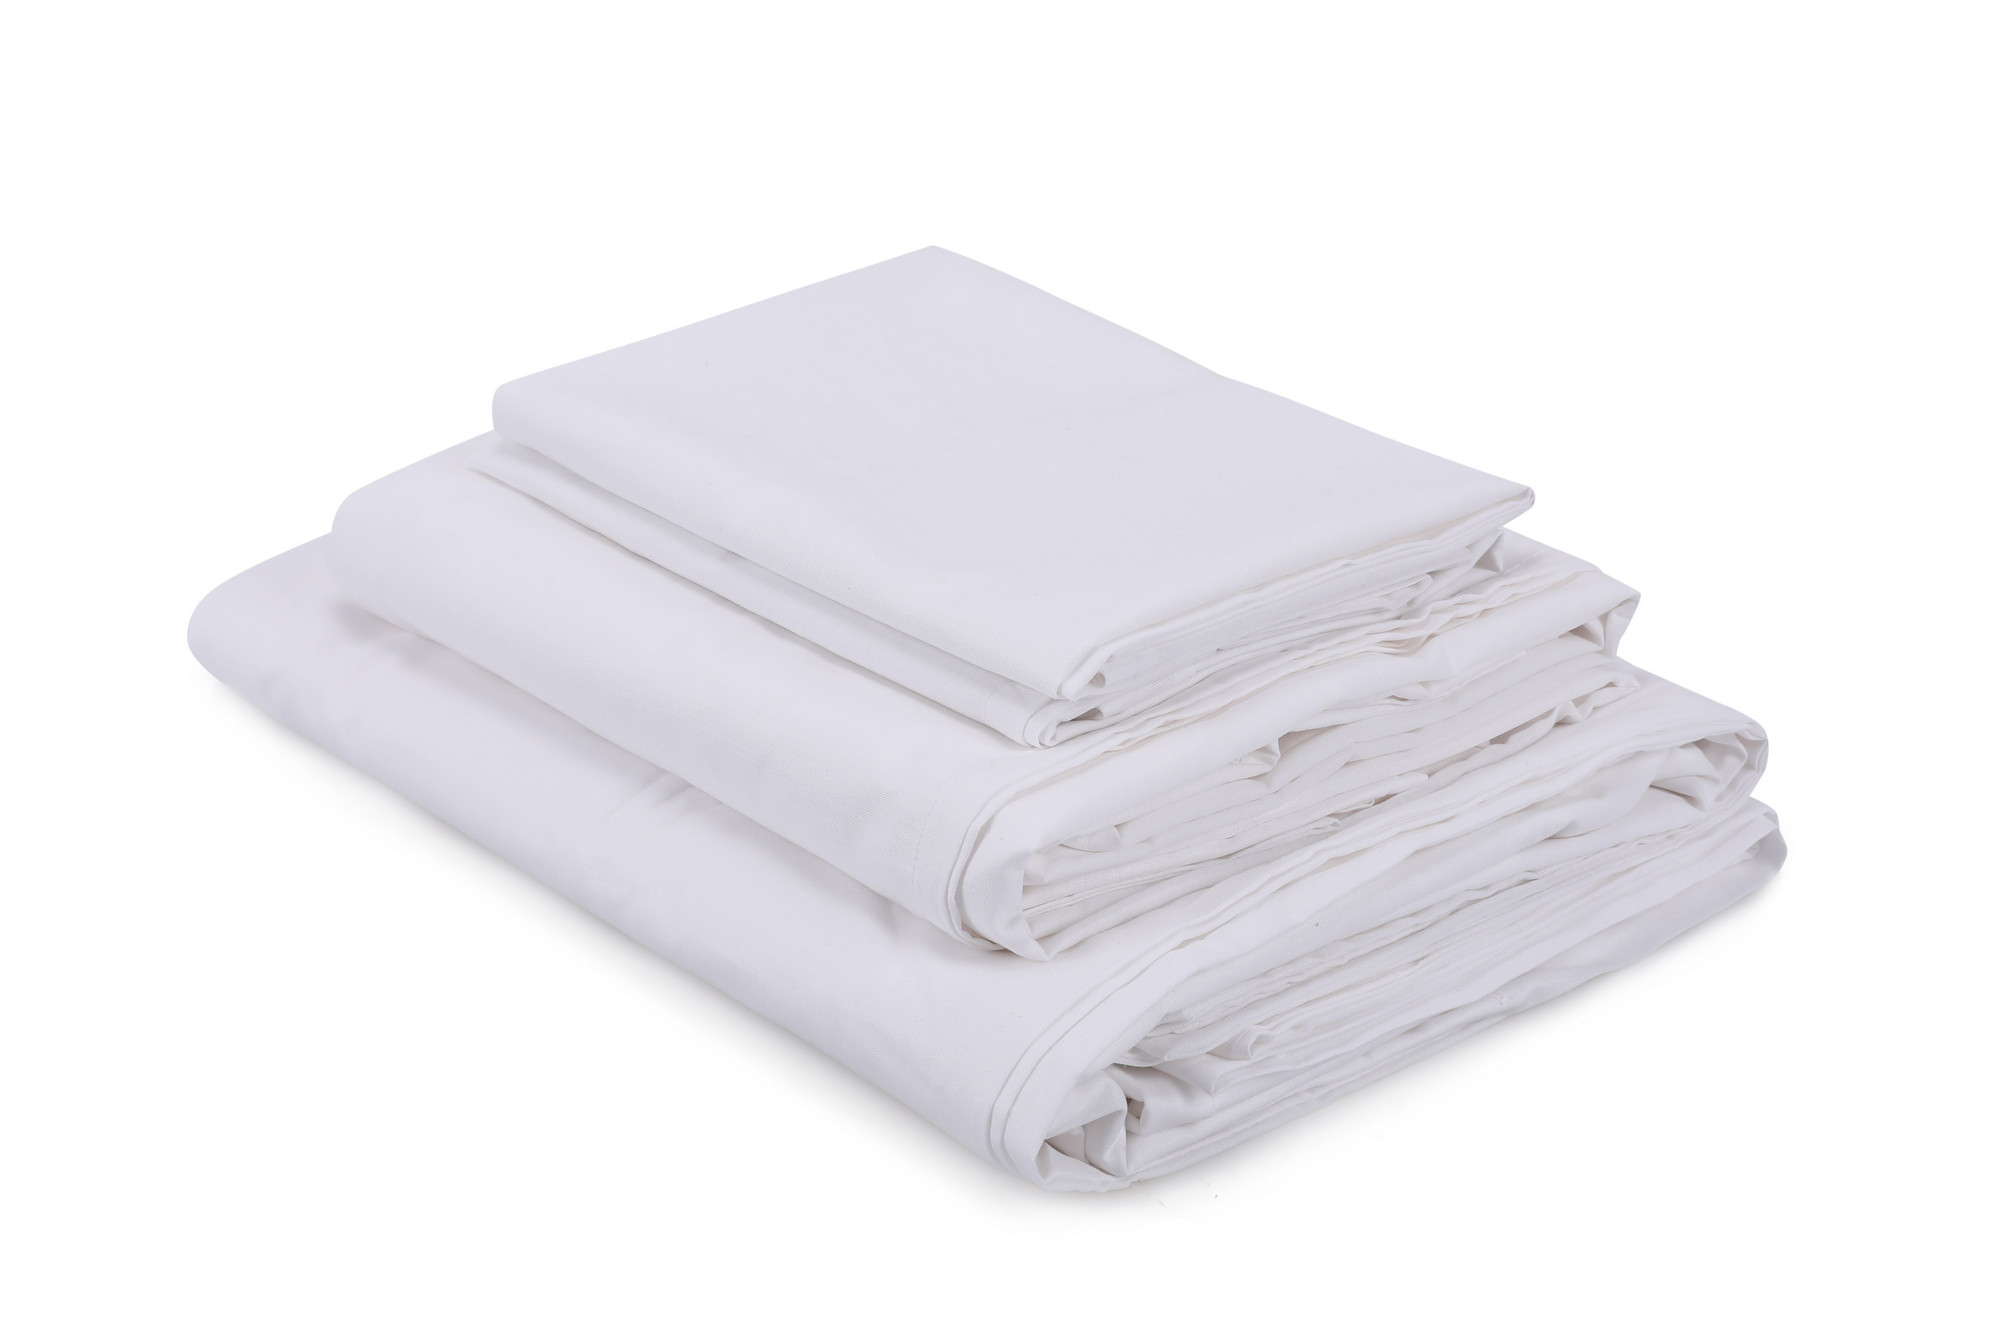 Ložní prádlo 200 x 220 cm Whiten (bílé)